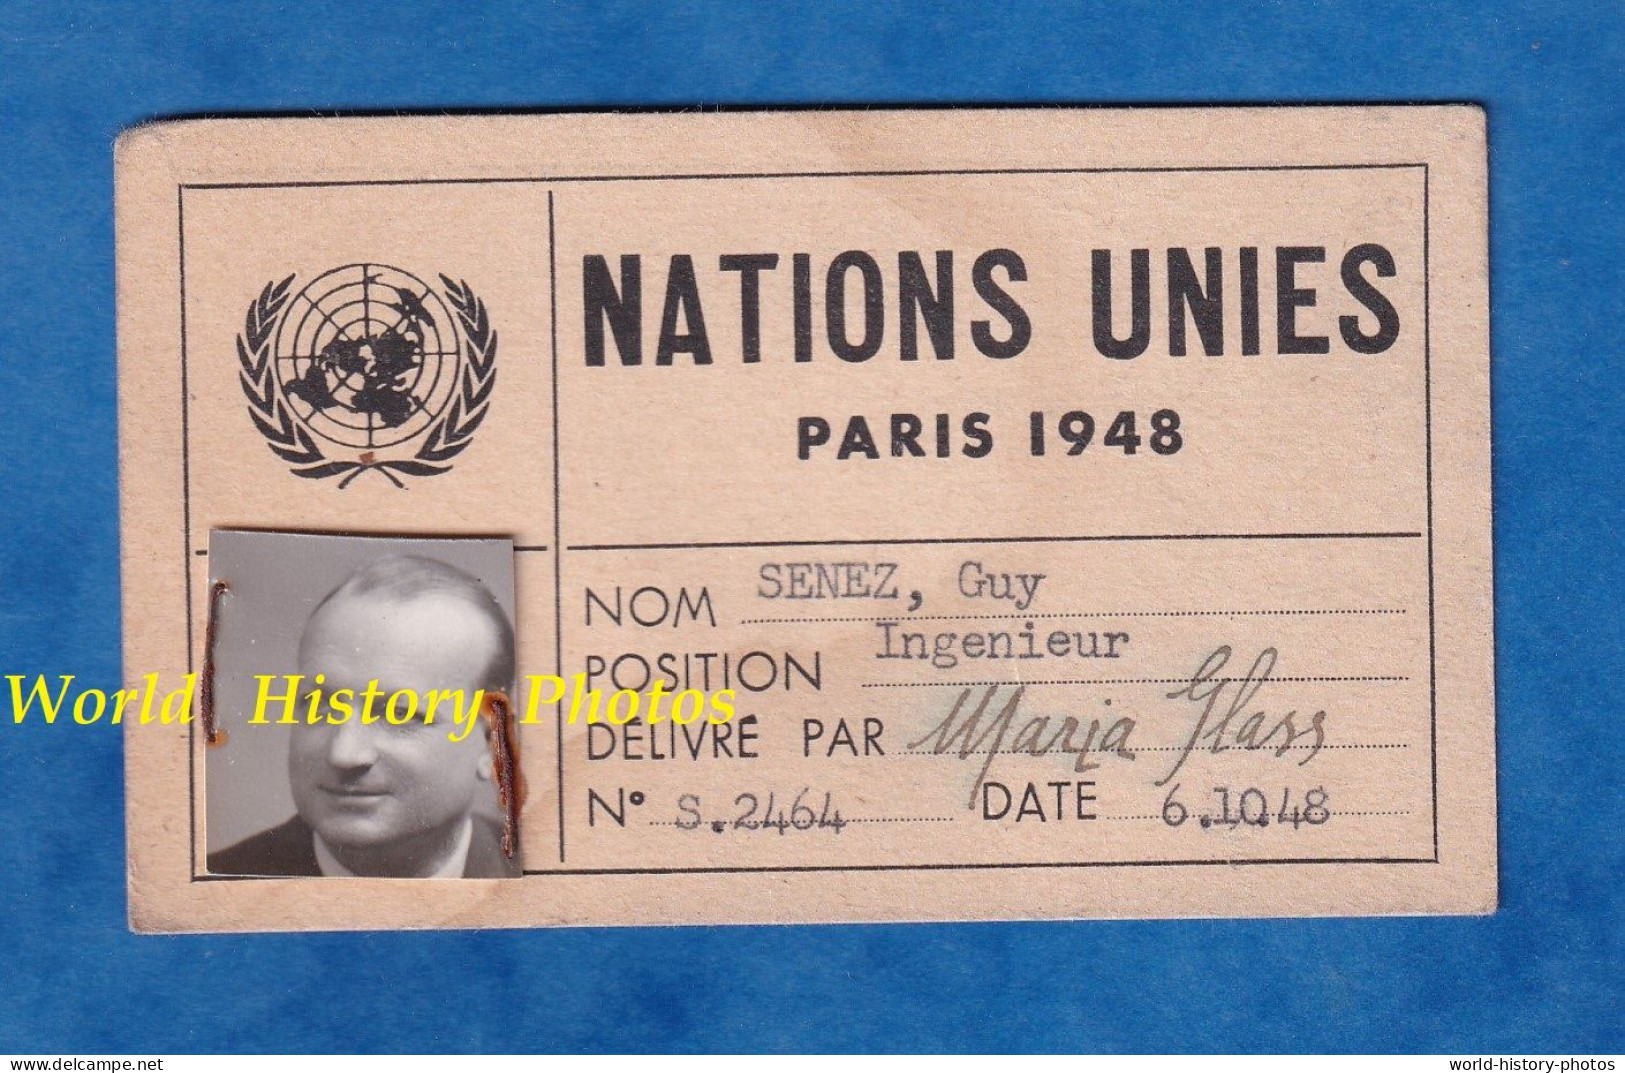 Carte Ancienne Des NATIONS UNIES Délivrée Par Maria Glass - PARIS , 1948 - Monsieur Guy SENEZ Ingénieur - Historical Documents